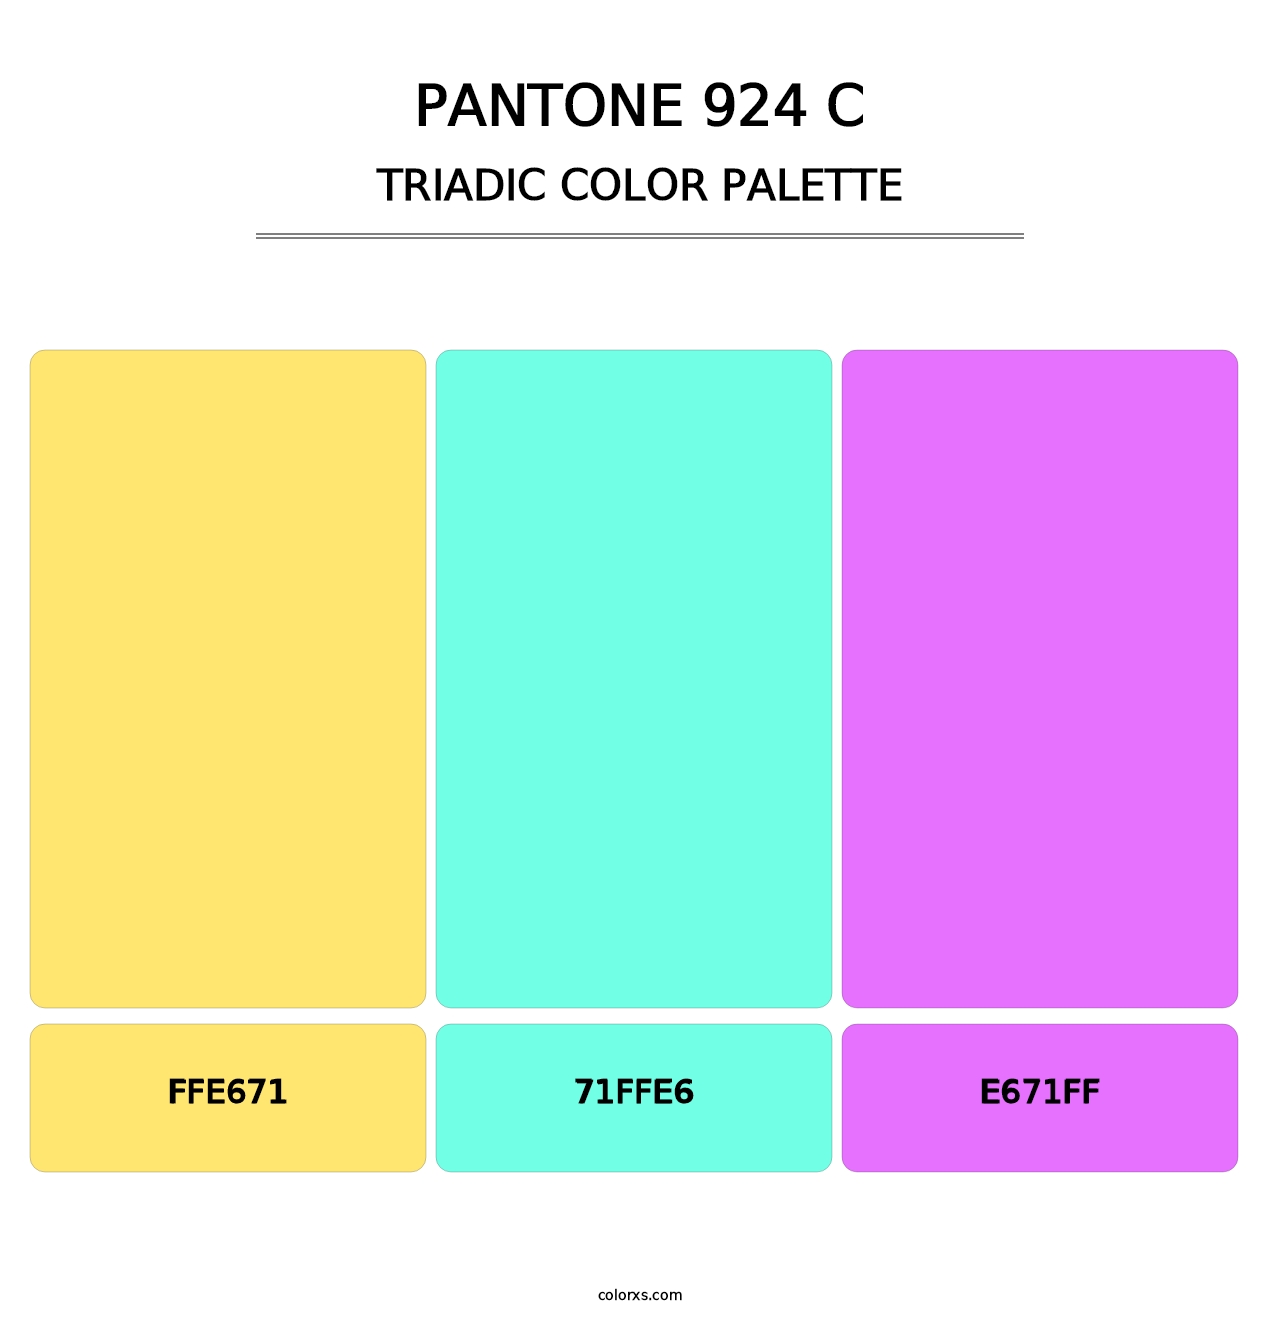 PANTONE 924 C - Triadic Color Palette